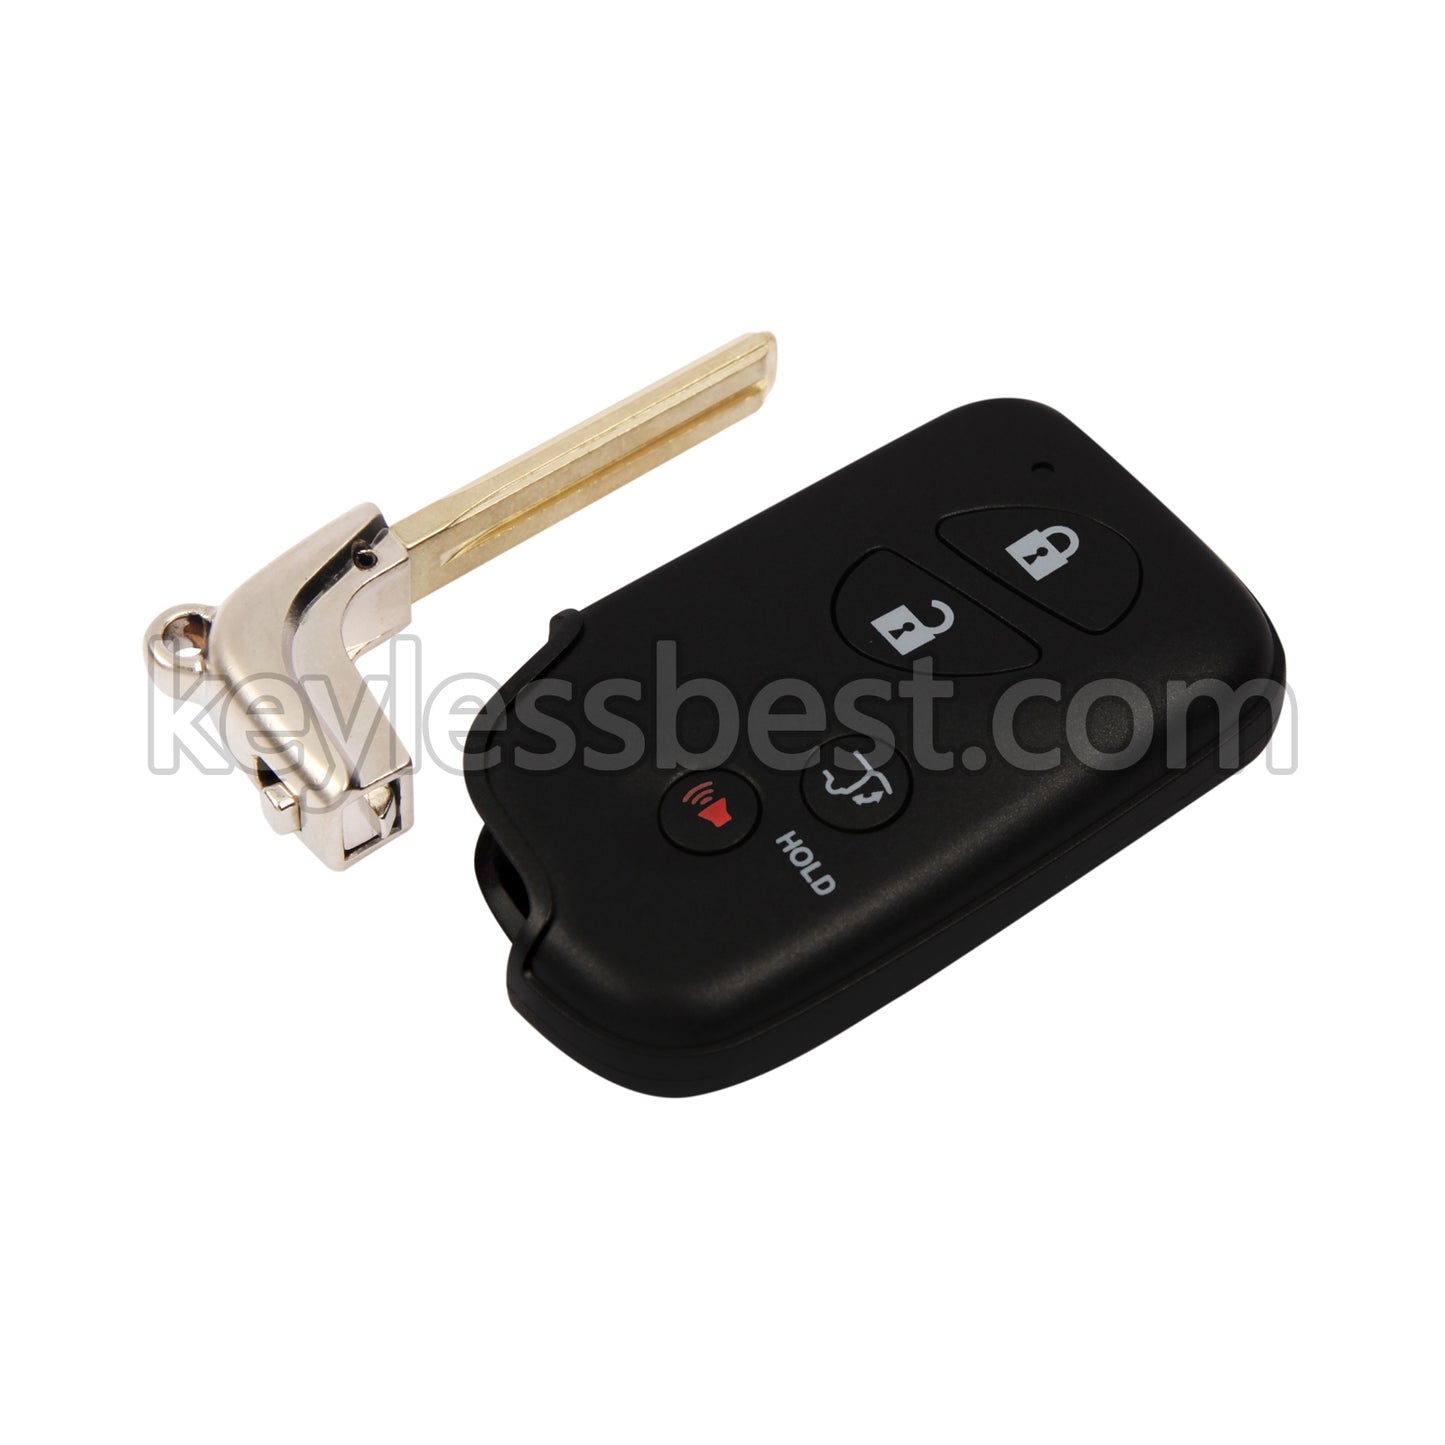 2010-2015 Lexus RX350 / 4 Buttons Remote Key / HYQ14ACX / 315MHz